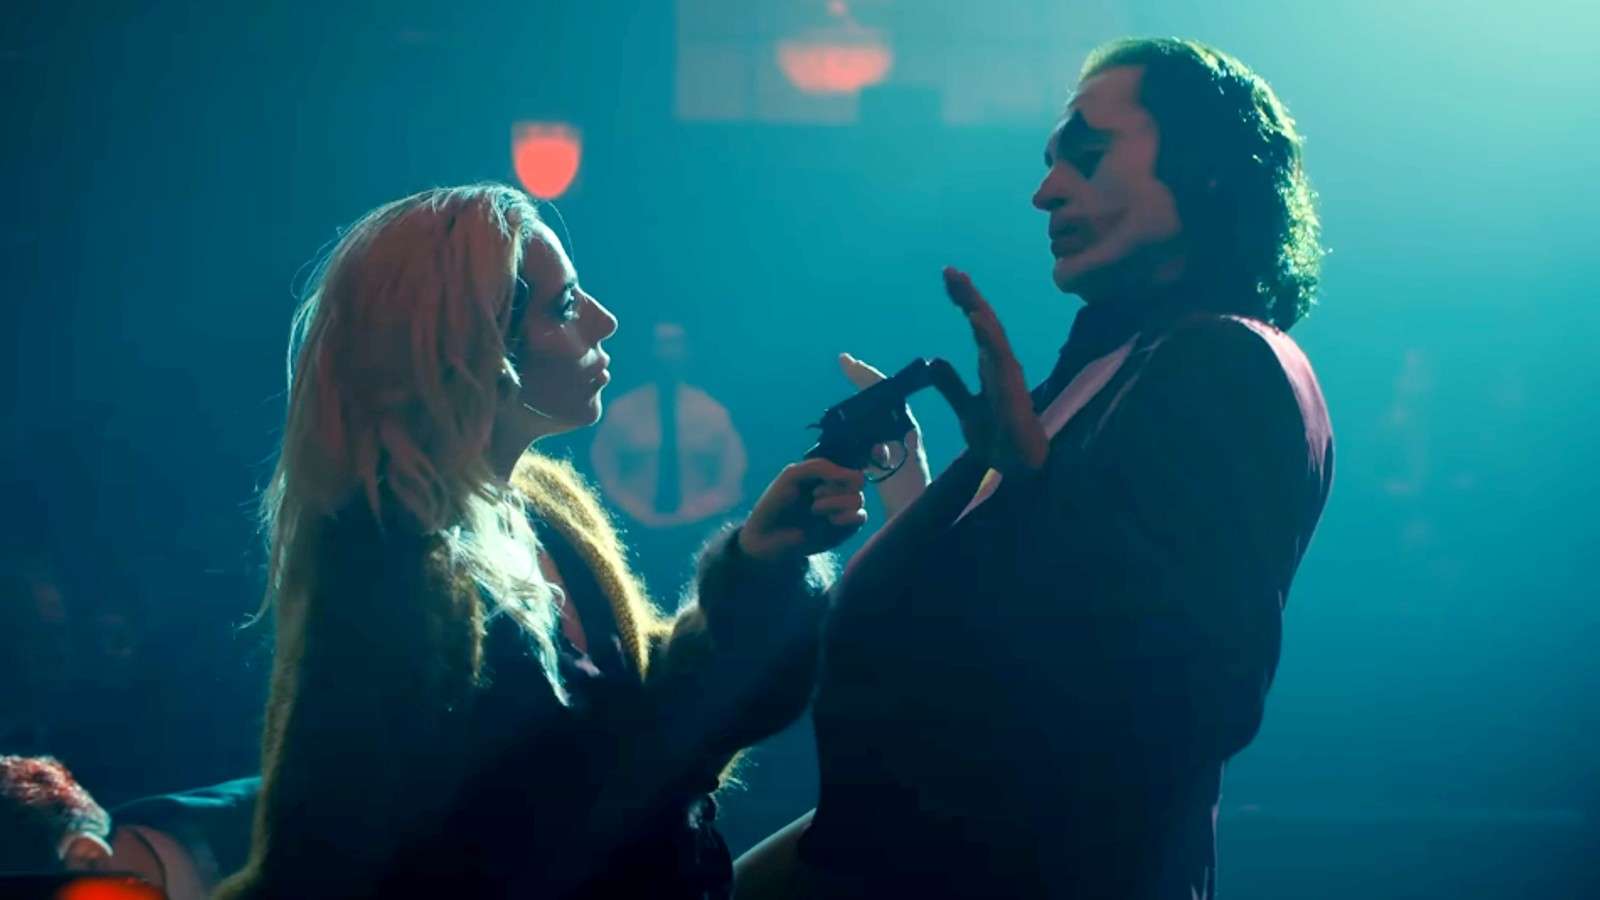 Joker 2 fans are convinced Harley Quinn will kill Arthur - Dexerto